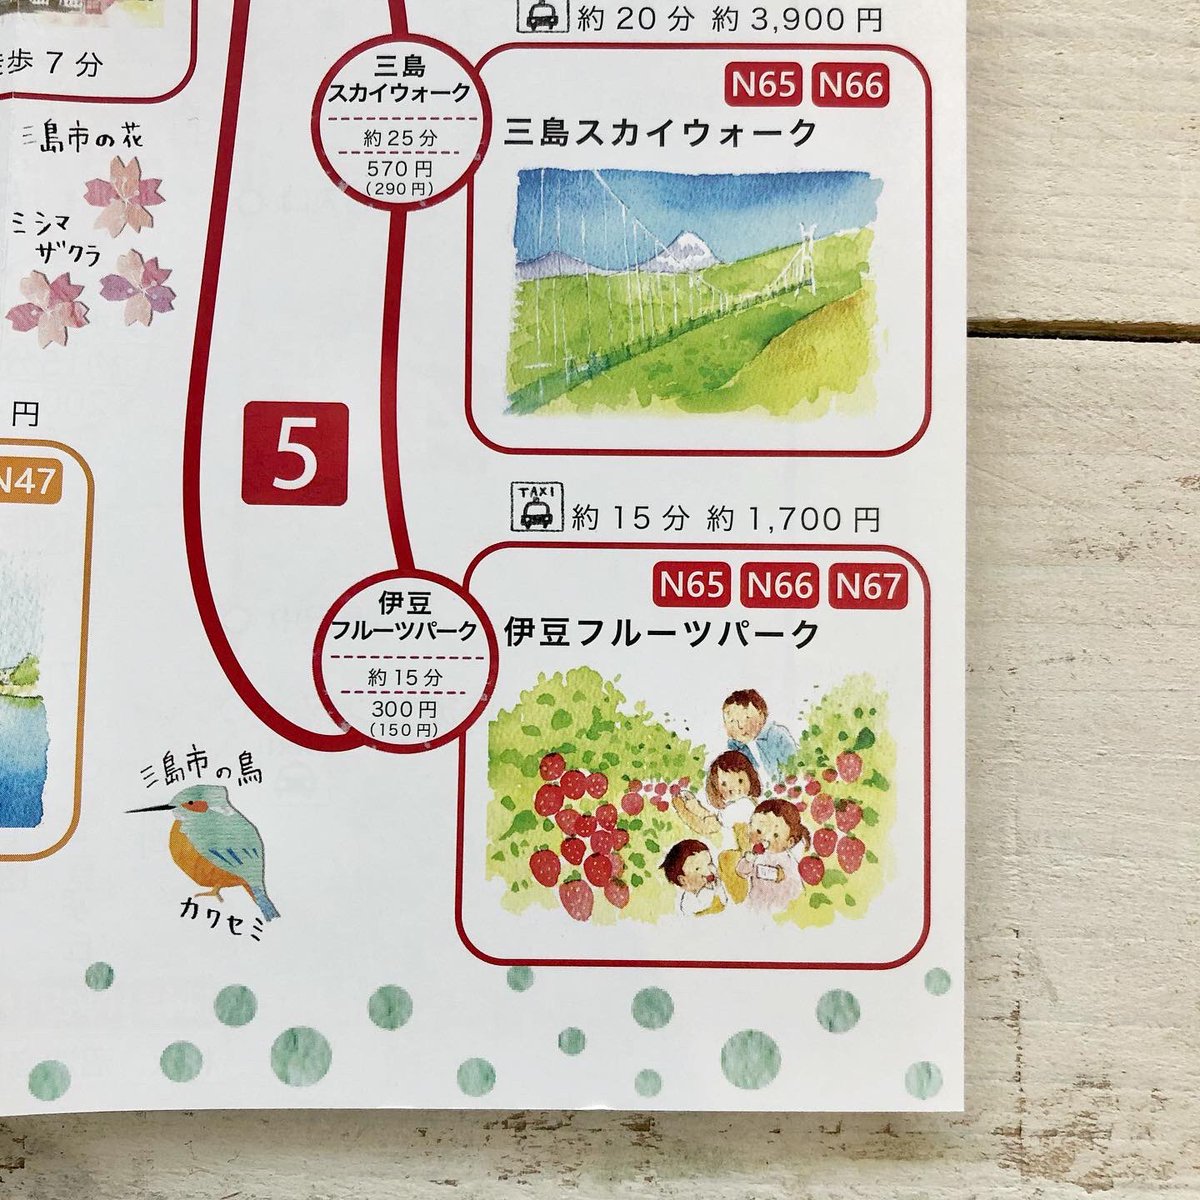 「乗って 旅する みしまっぷ」
できました‥やっと‥
(発行:三島市地域公共交通網形成協議会)

観光スポットの絵も描きました💪
表紙にいるファミリーが、各名所をまわって遊んでいます。 